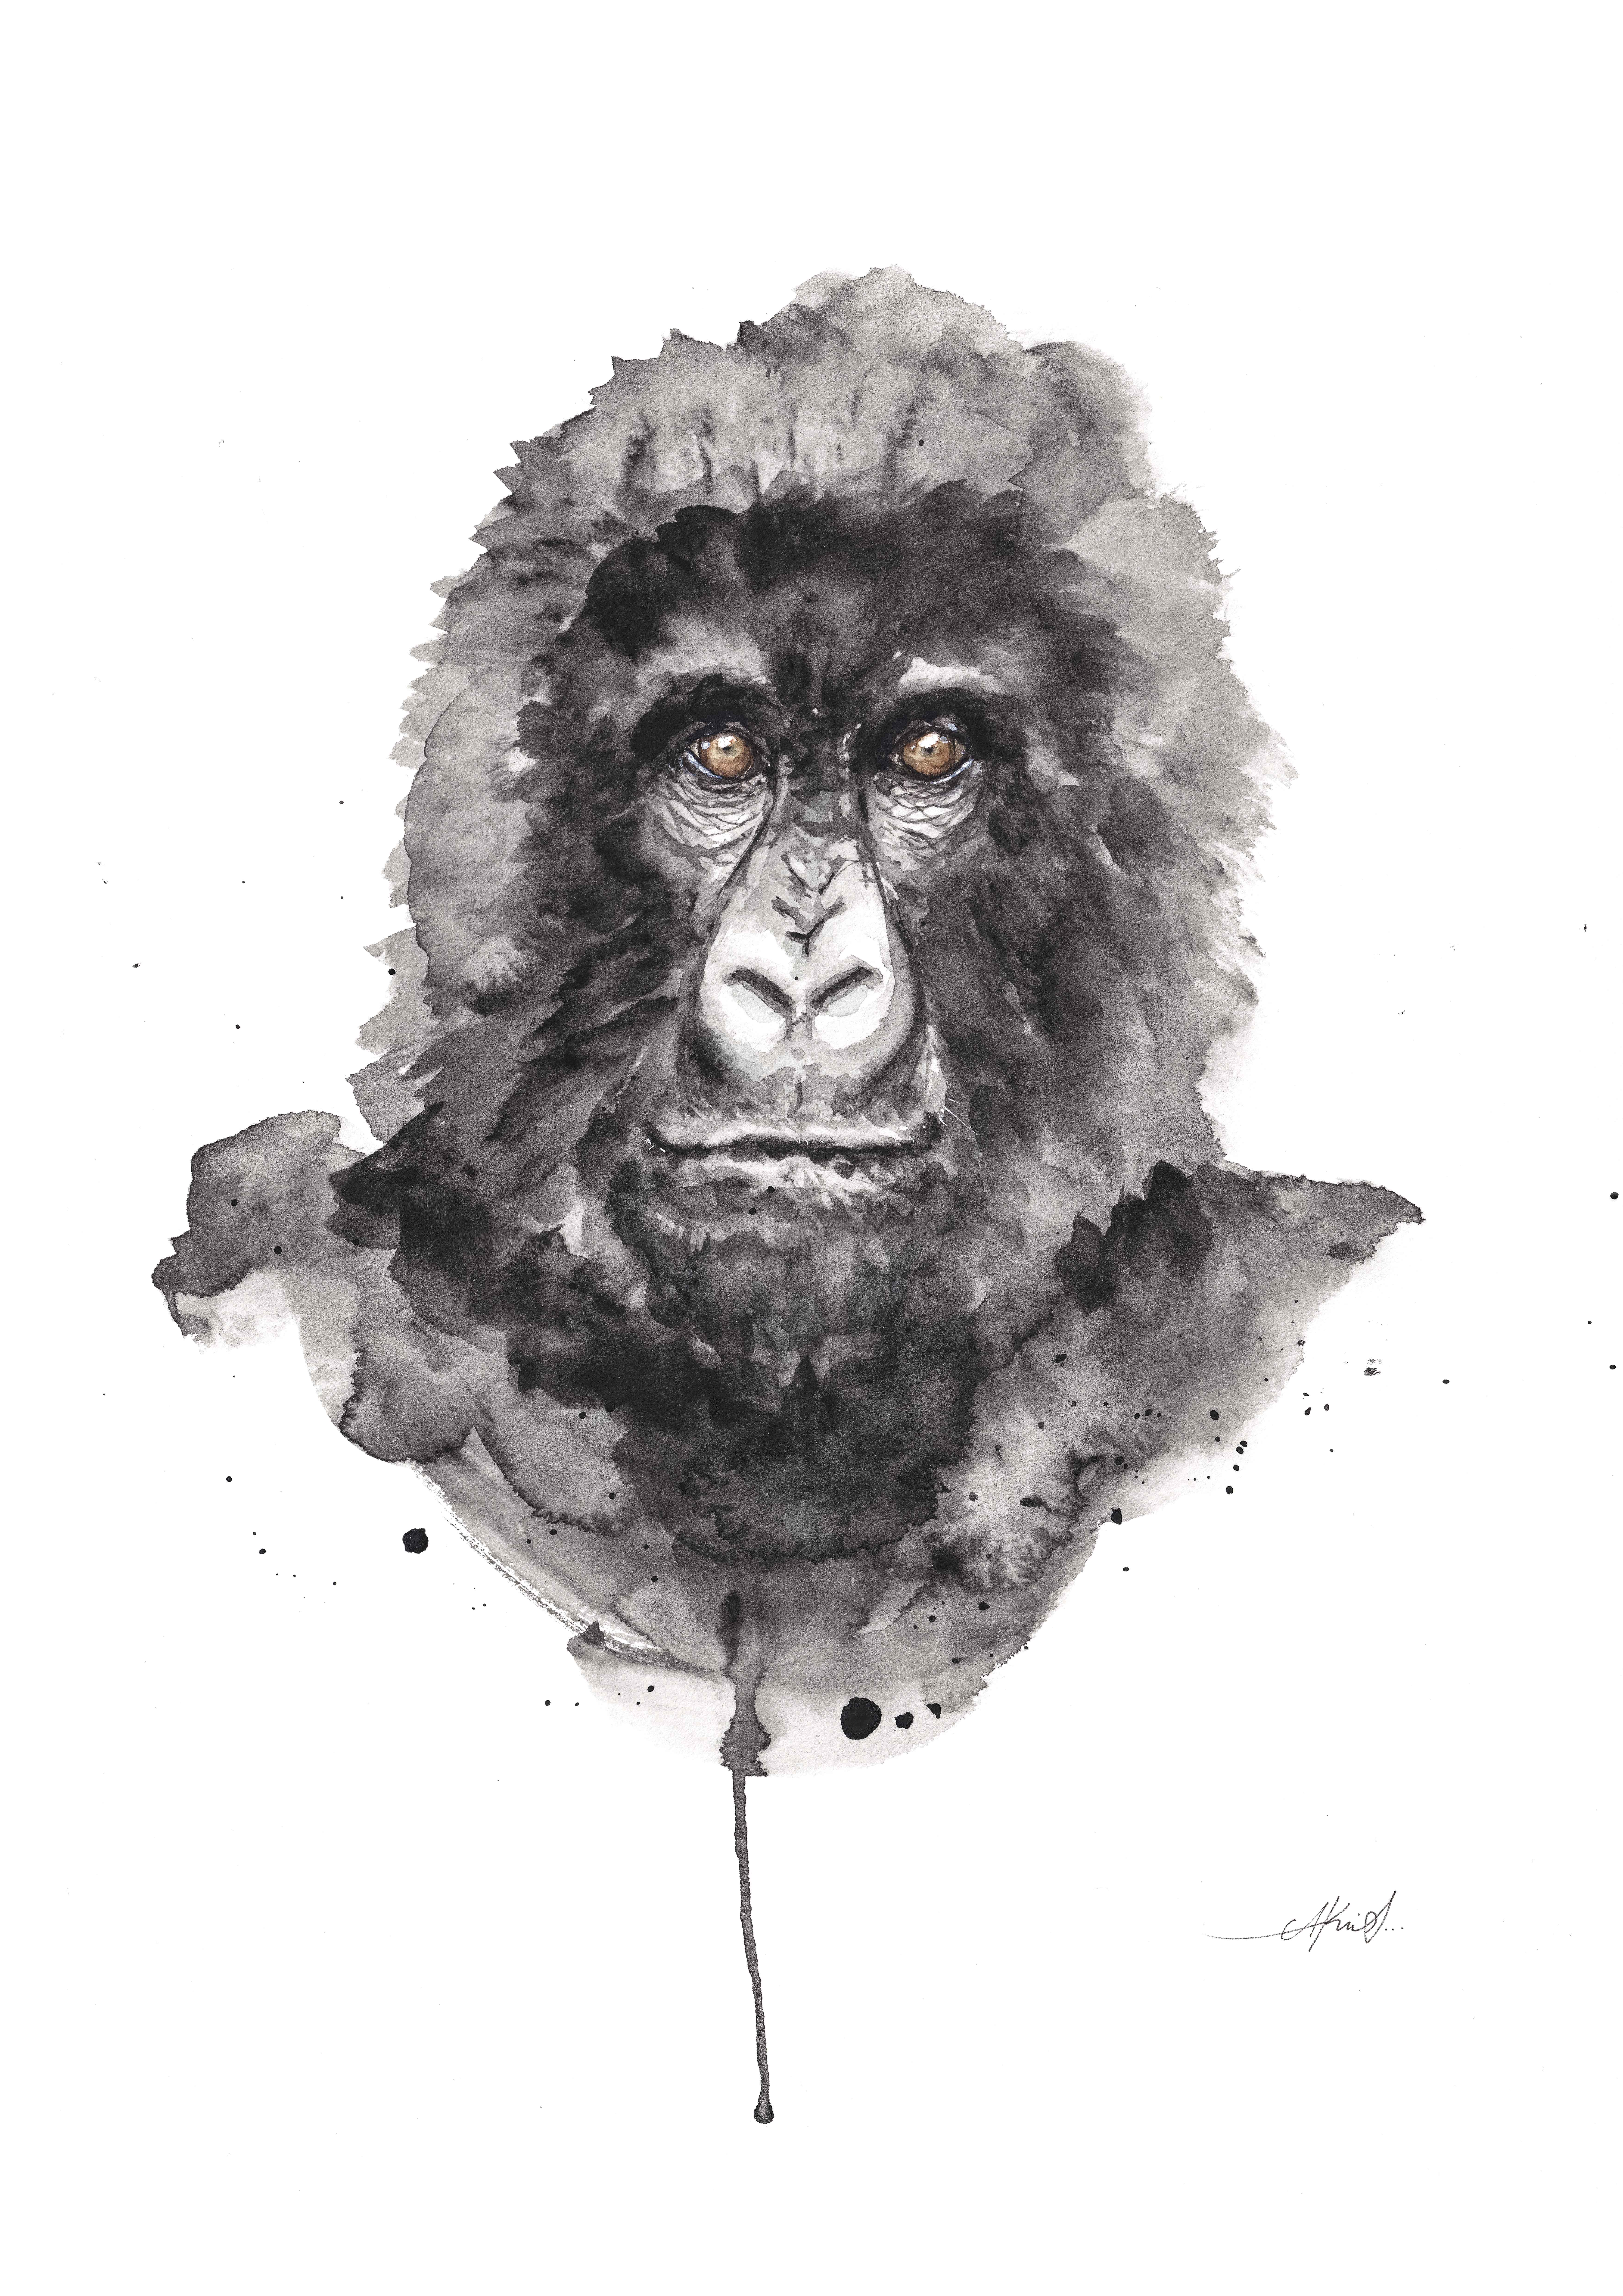 Retrato a acuarela de un gorila de montaña en tonos grises y negros con fondo blanco y ojos marrón claro con mirada profunda.